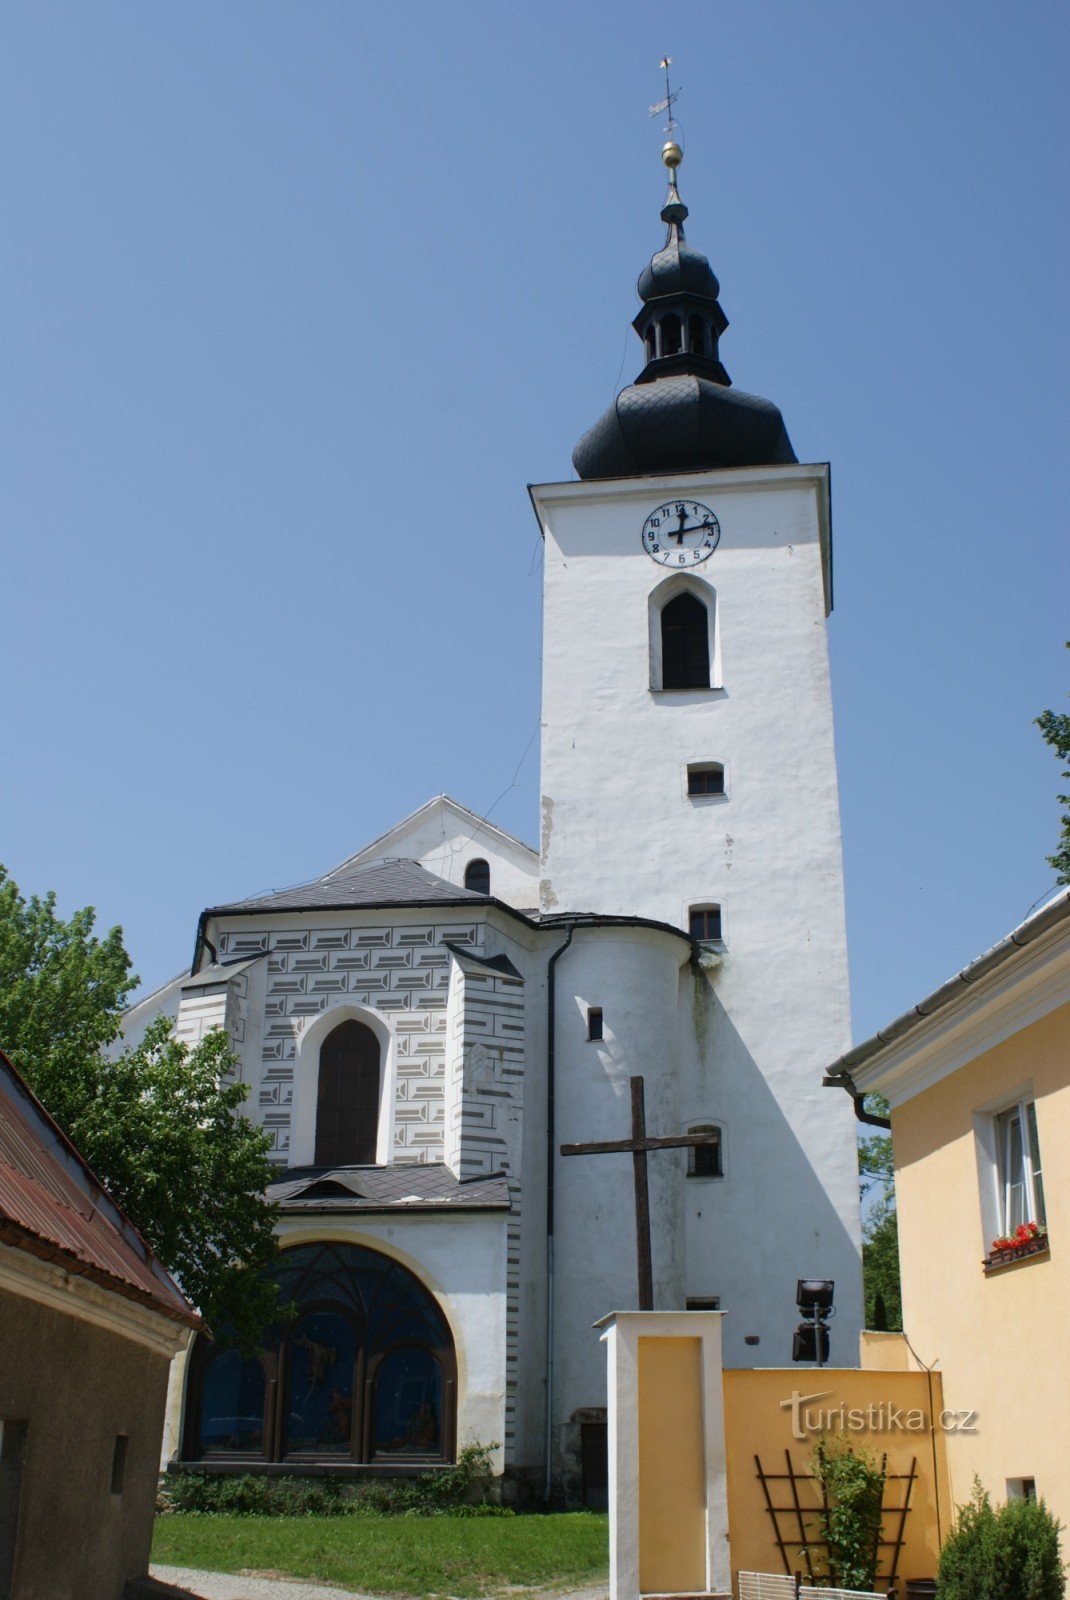 Moravian Beroun och dess monument.